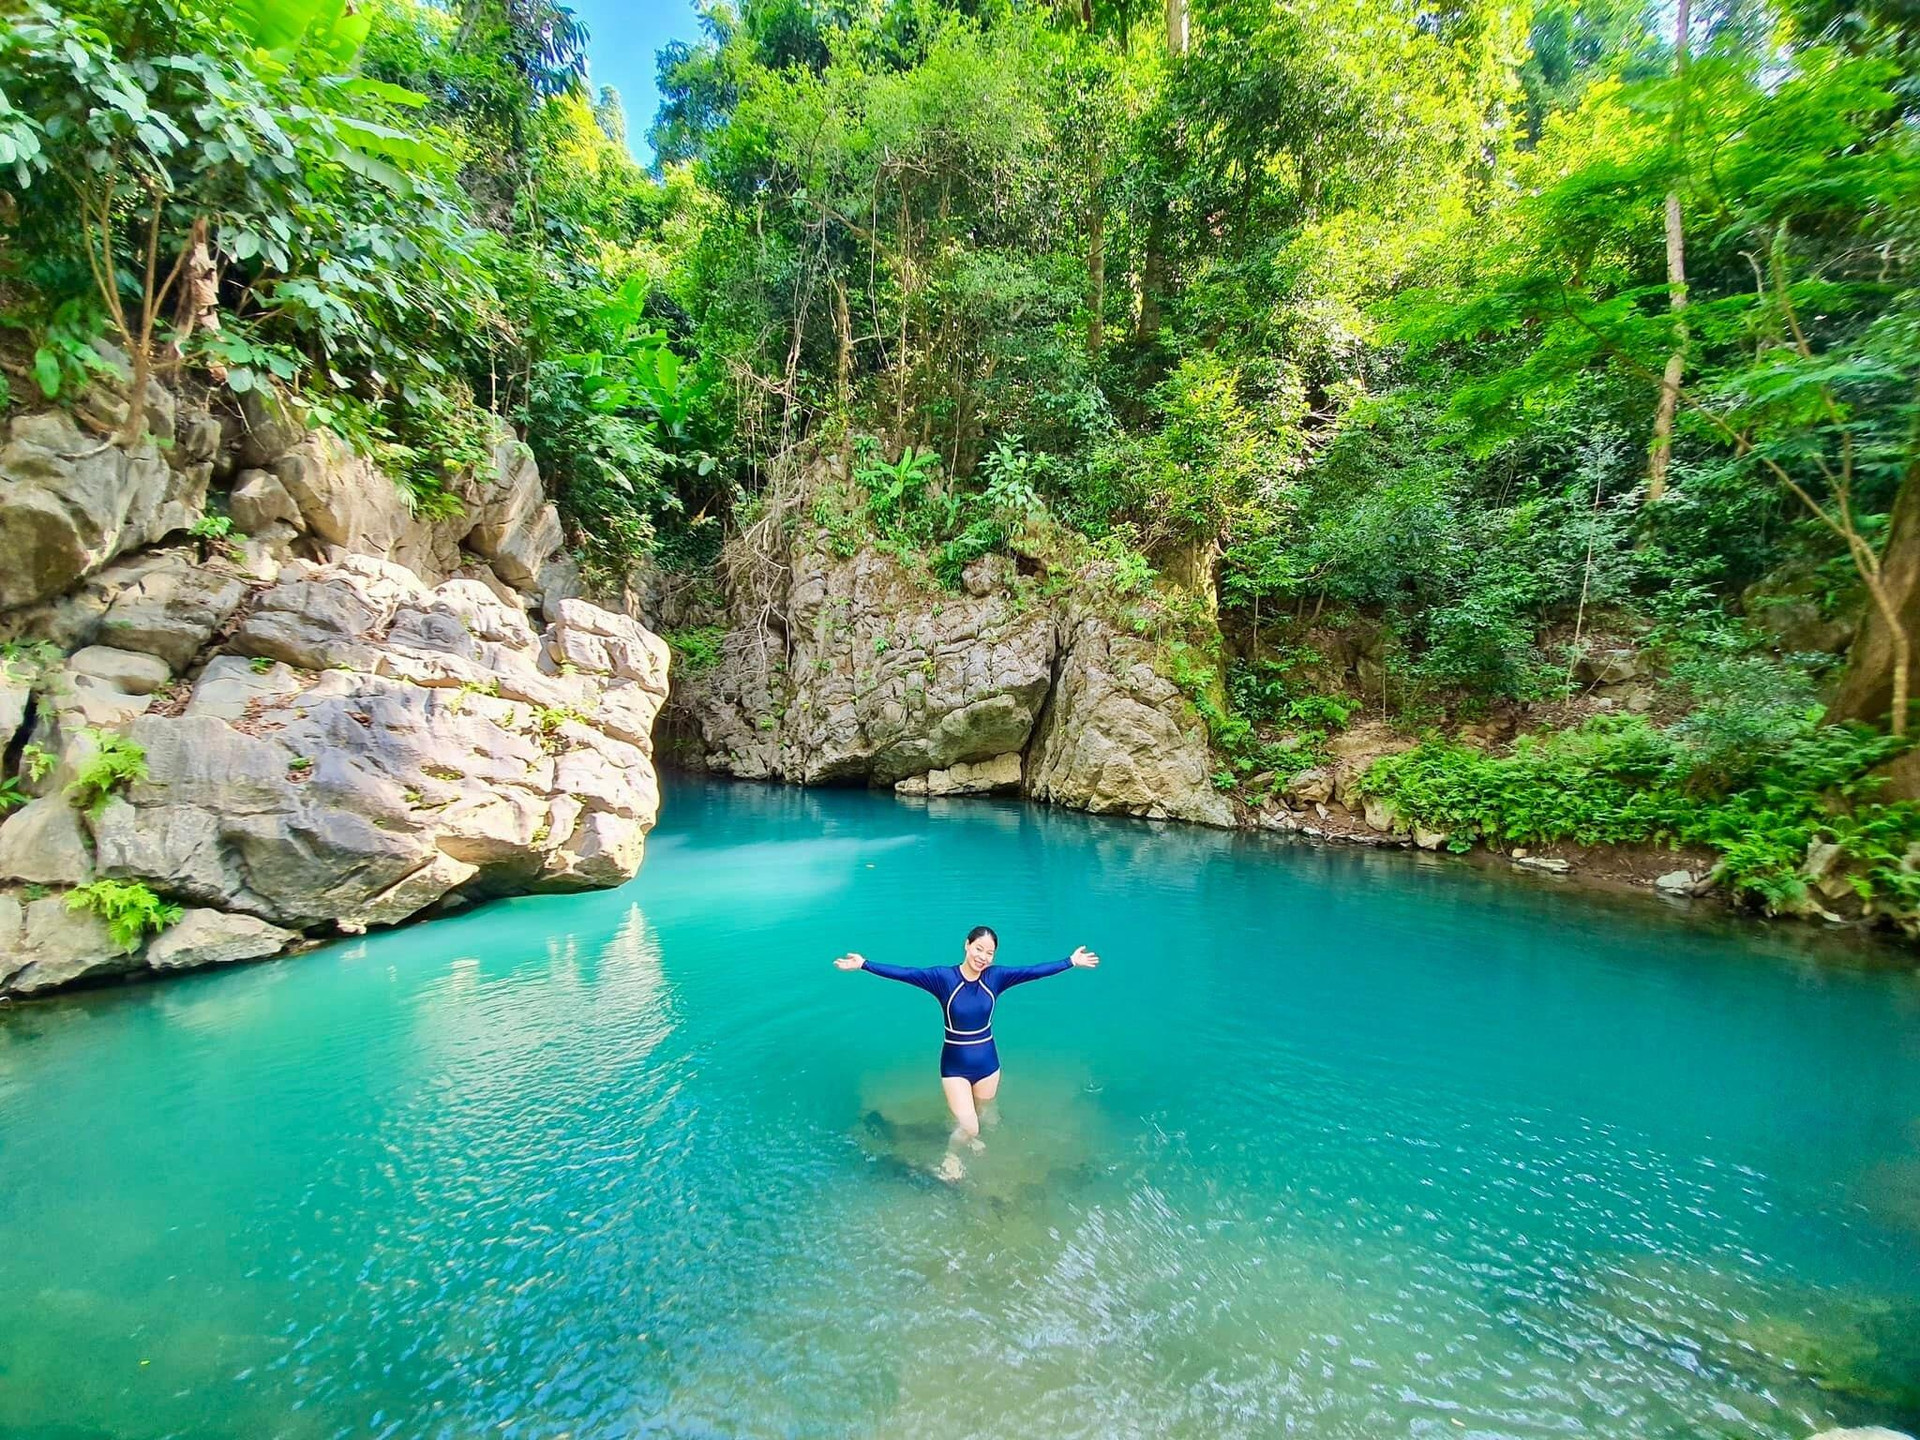 Hồ nước xanh màu ngọc bích đẹp như tiên cảnh ẩn giữa Di sản thế giới ở Việt Nam - 6